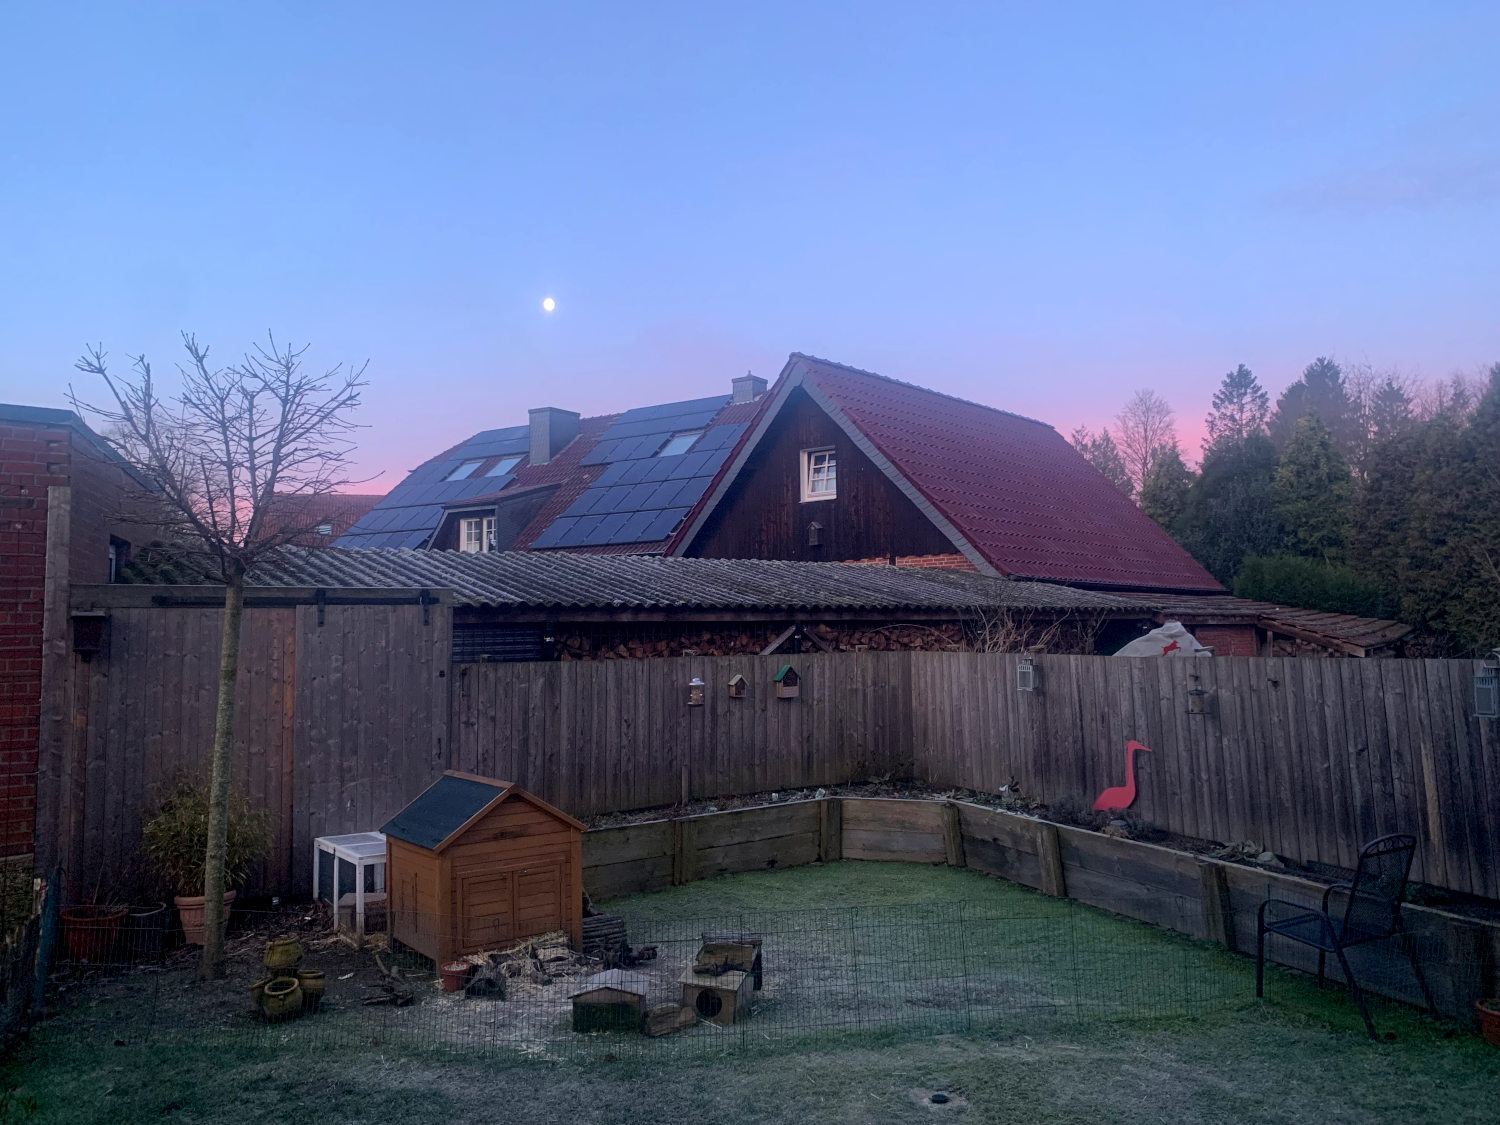 Garten mit einem Bretterzaun, dahinter ein Dachfirst, darüber Morgenrot und ein Mond